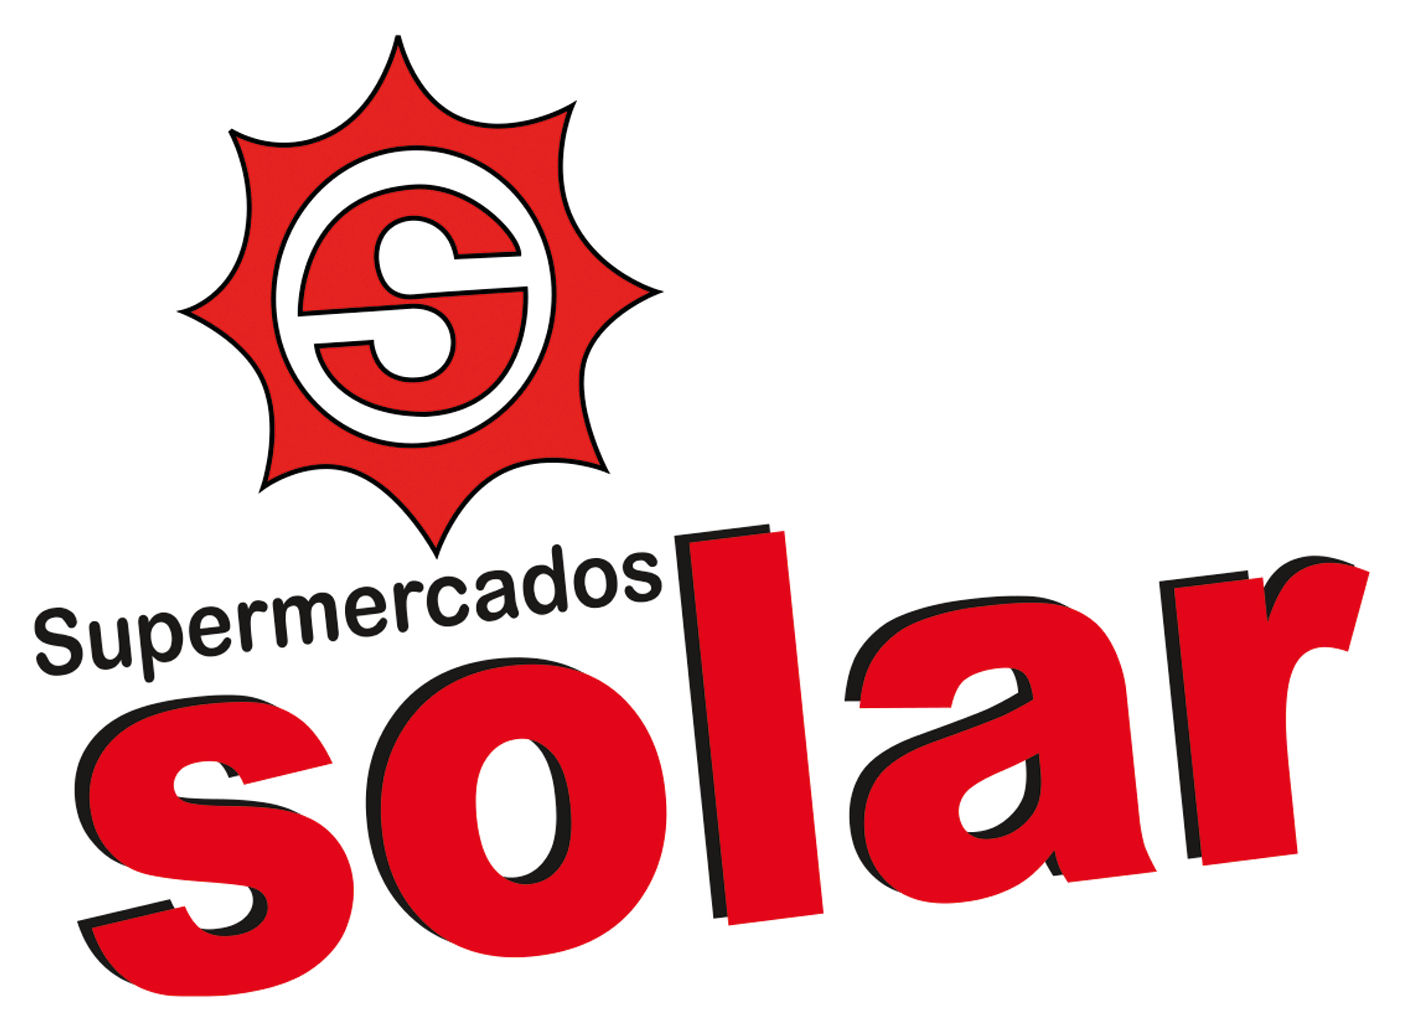 Solar Supermercado